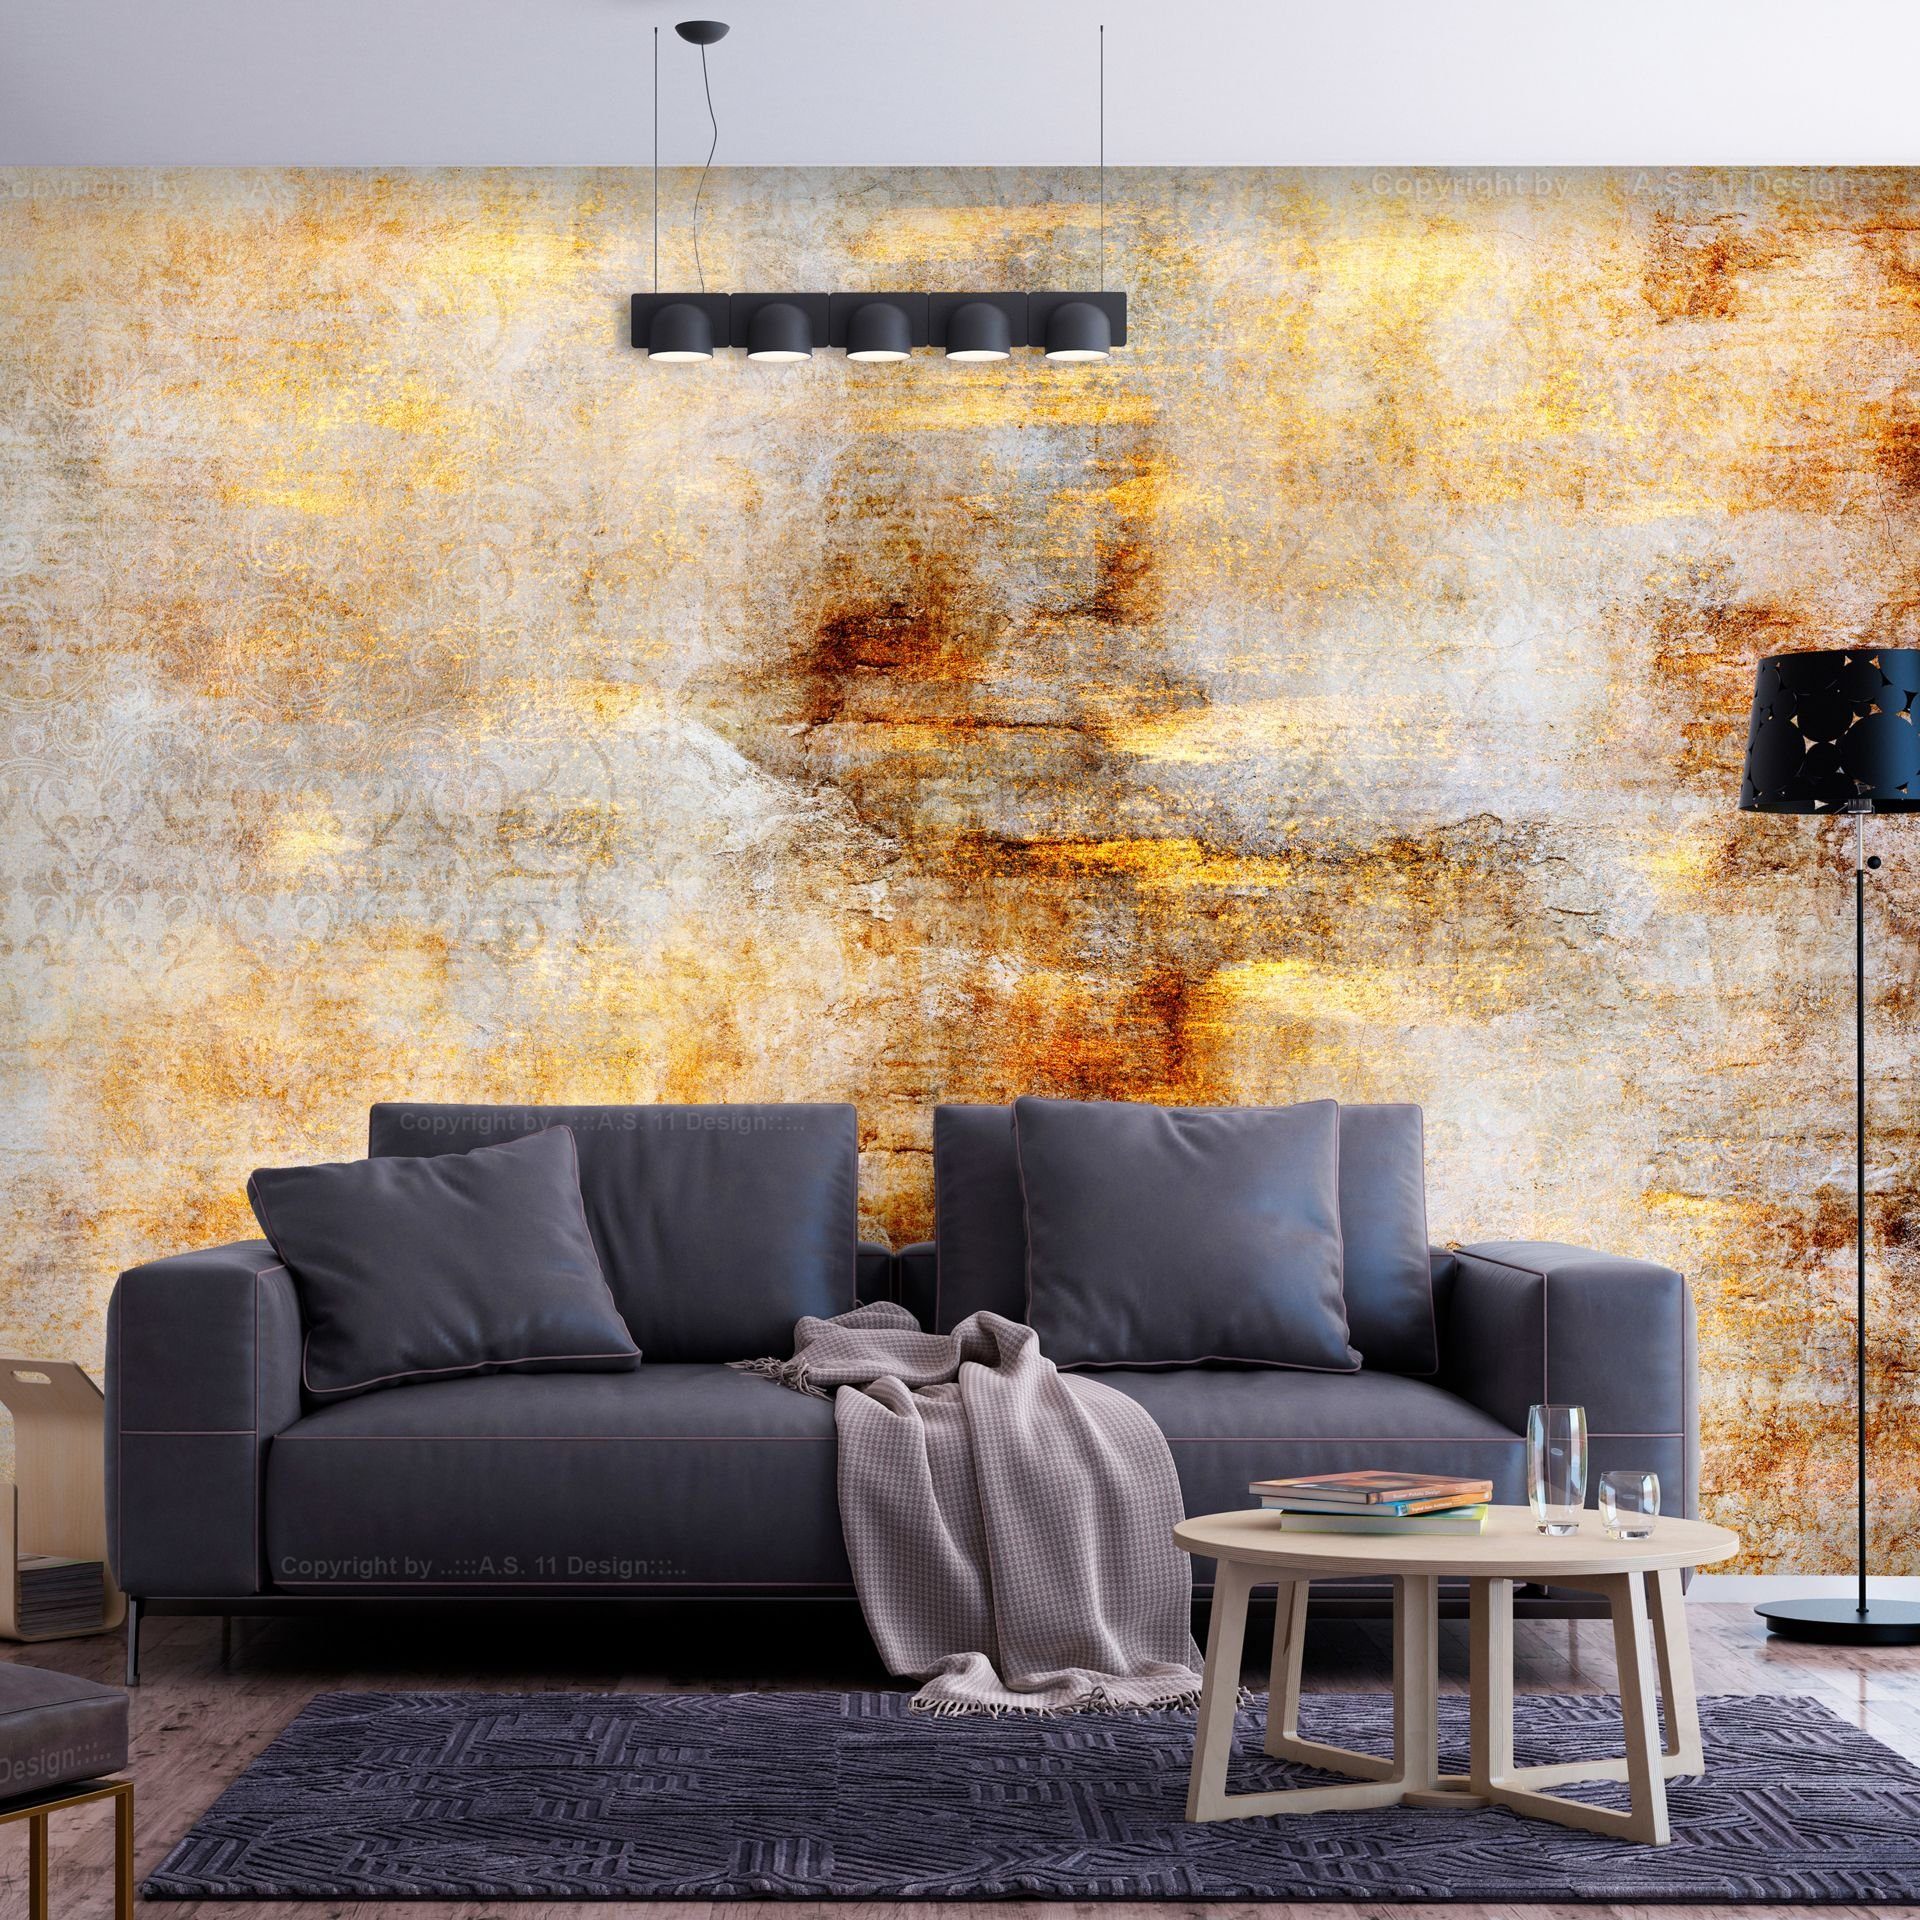 KUNSTLOFT Vliestapete Golden Expression 1x0.7 m, halb-matt, lichtbeständige Design Tapete